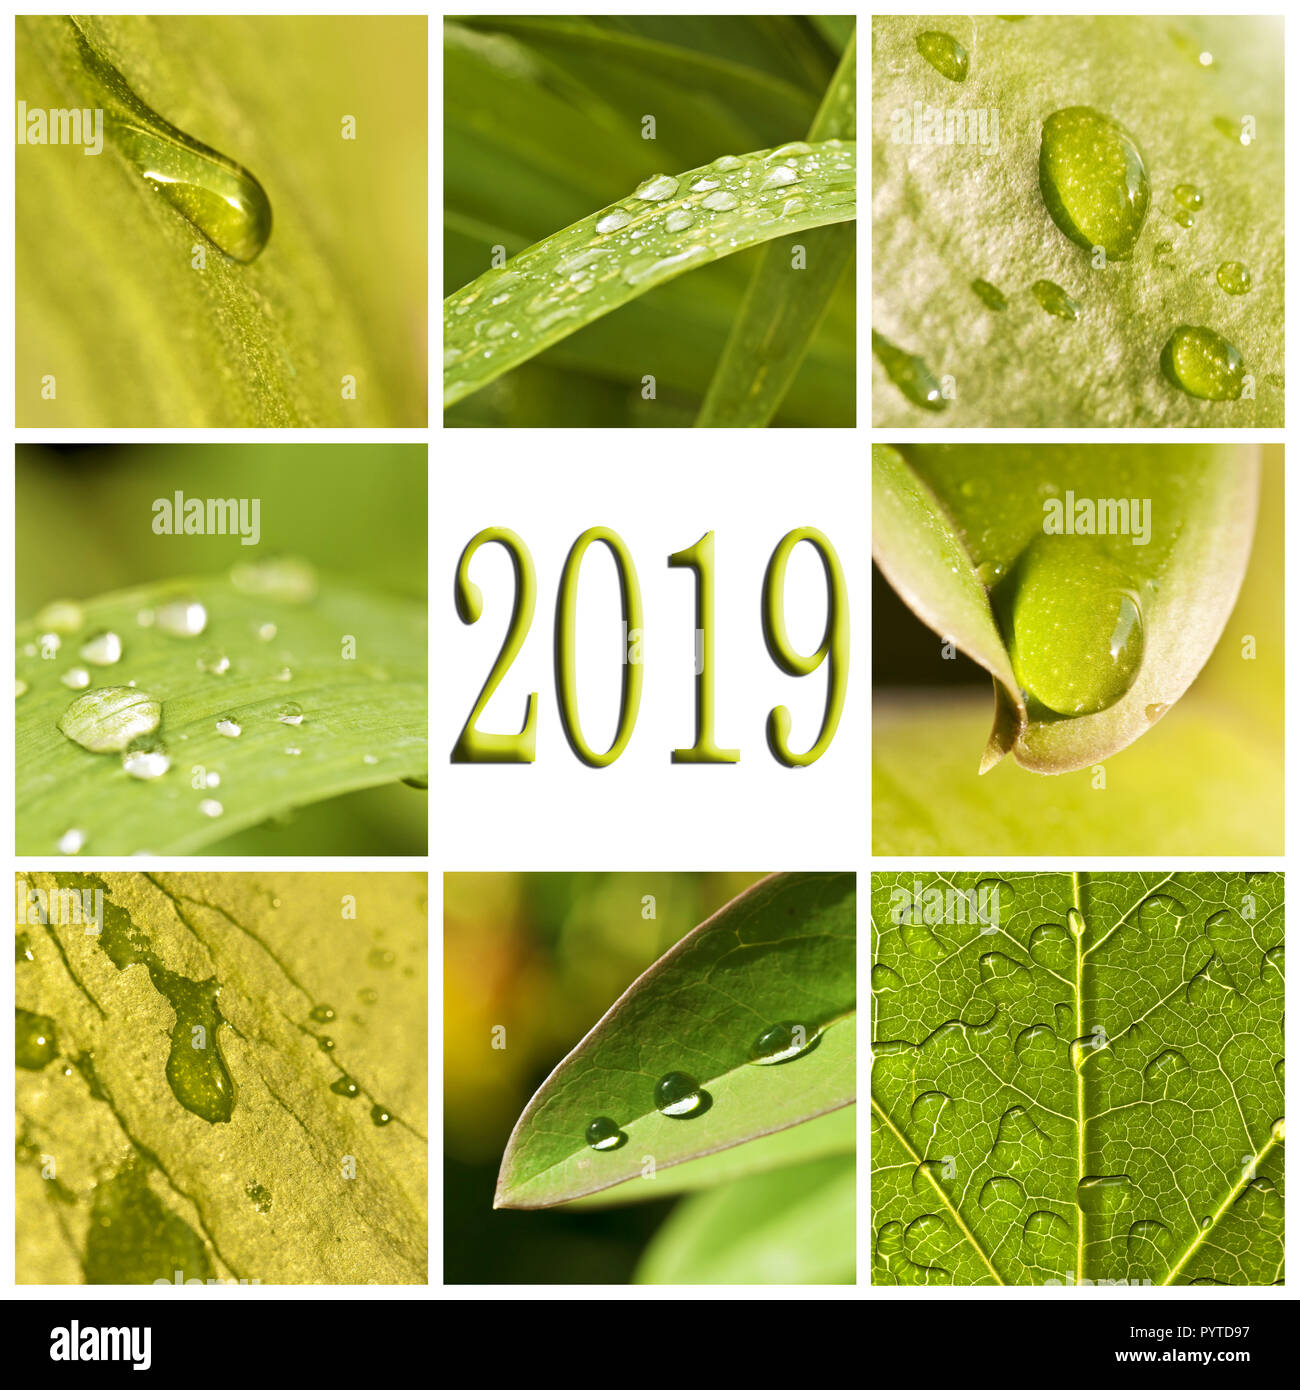 2019, hojas verdes y gotas de lluvia photo collage Foto de stock